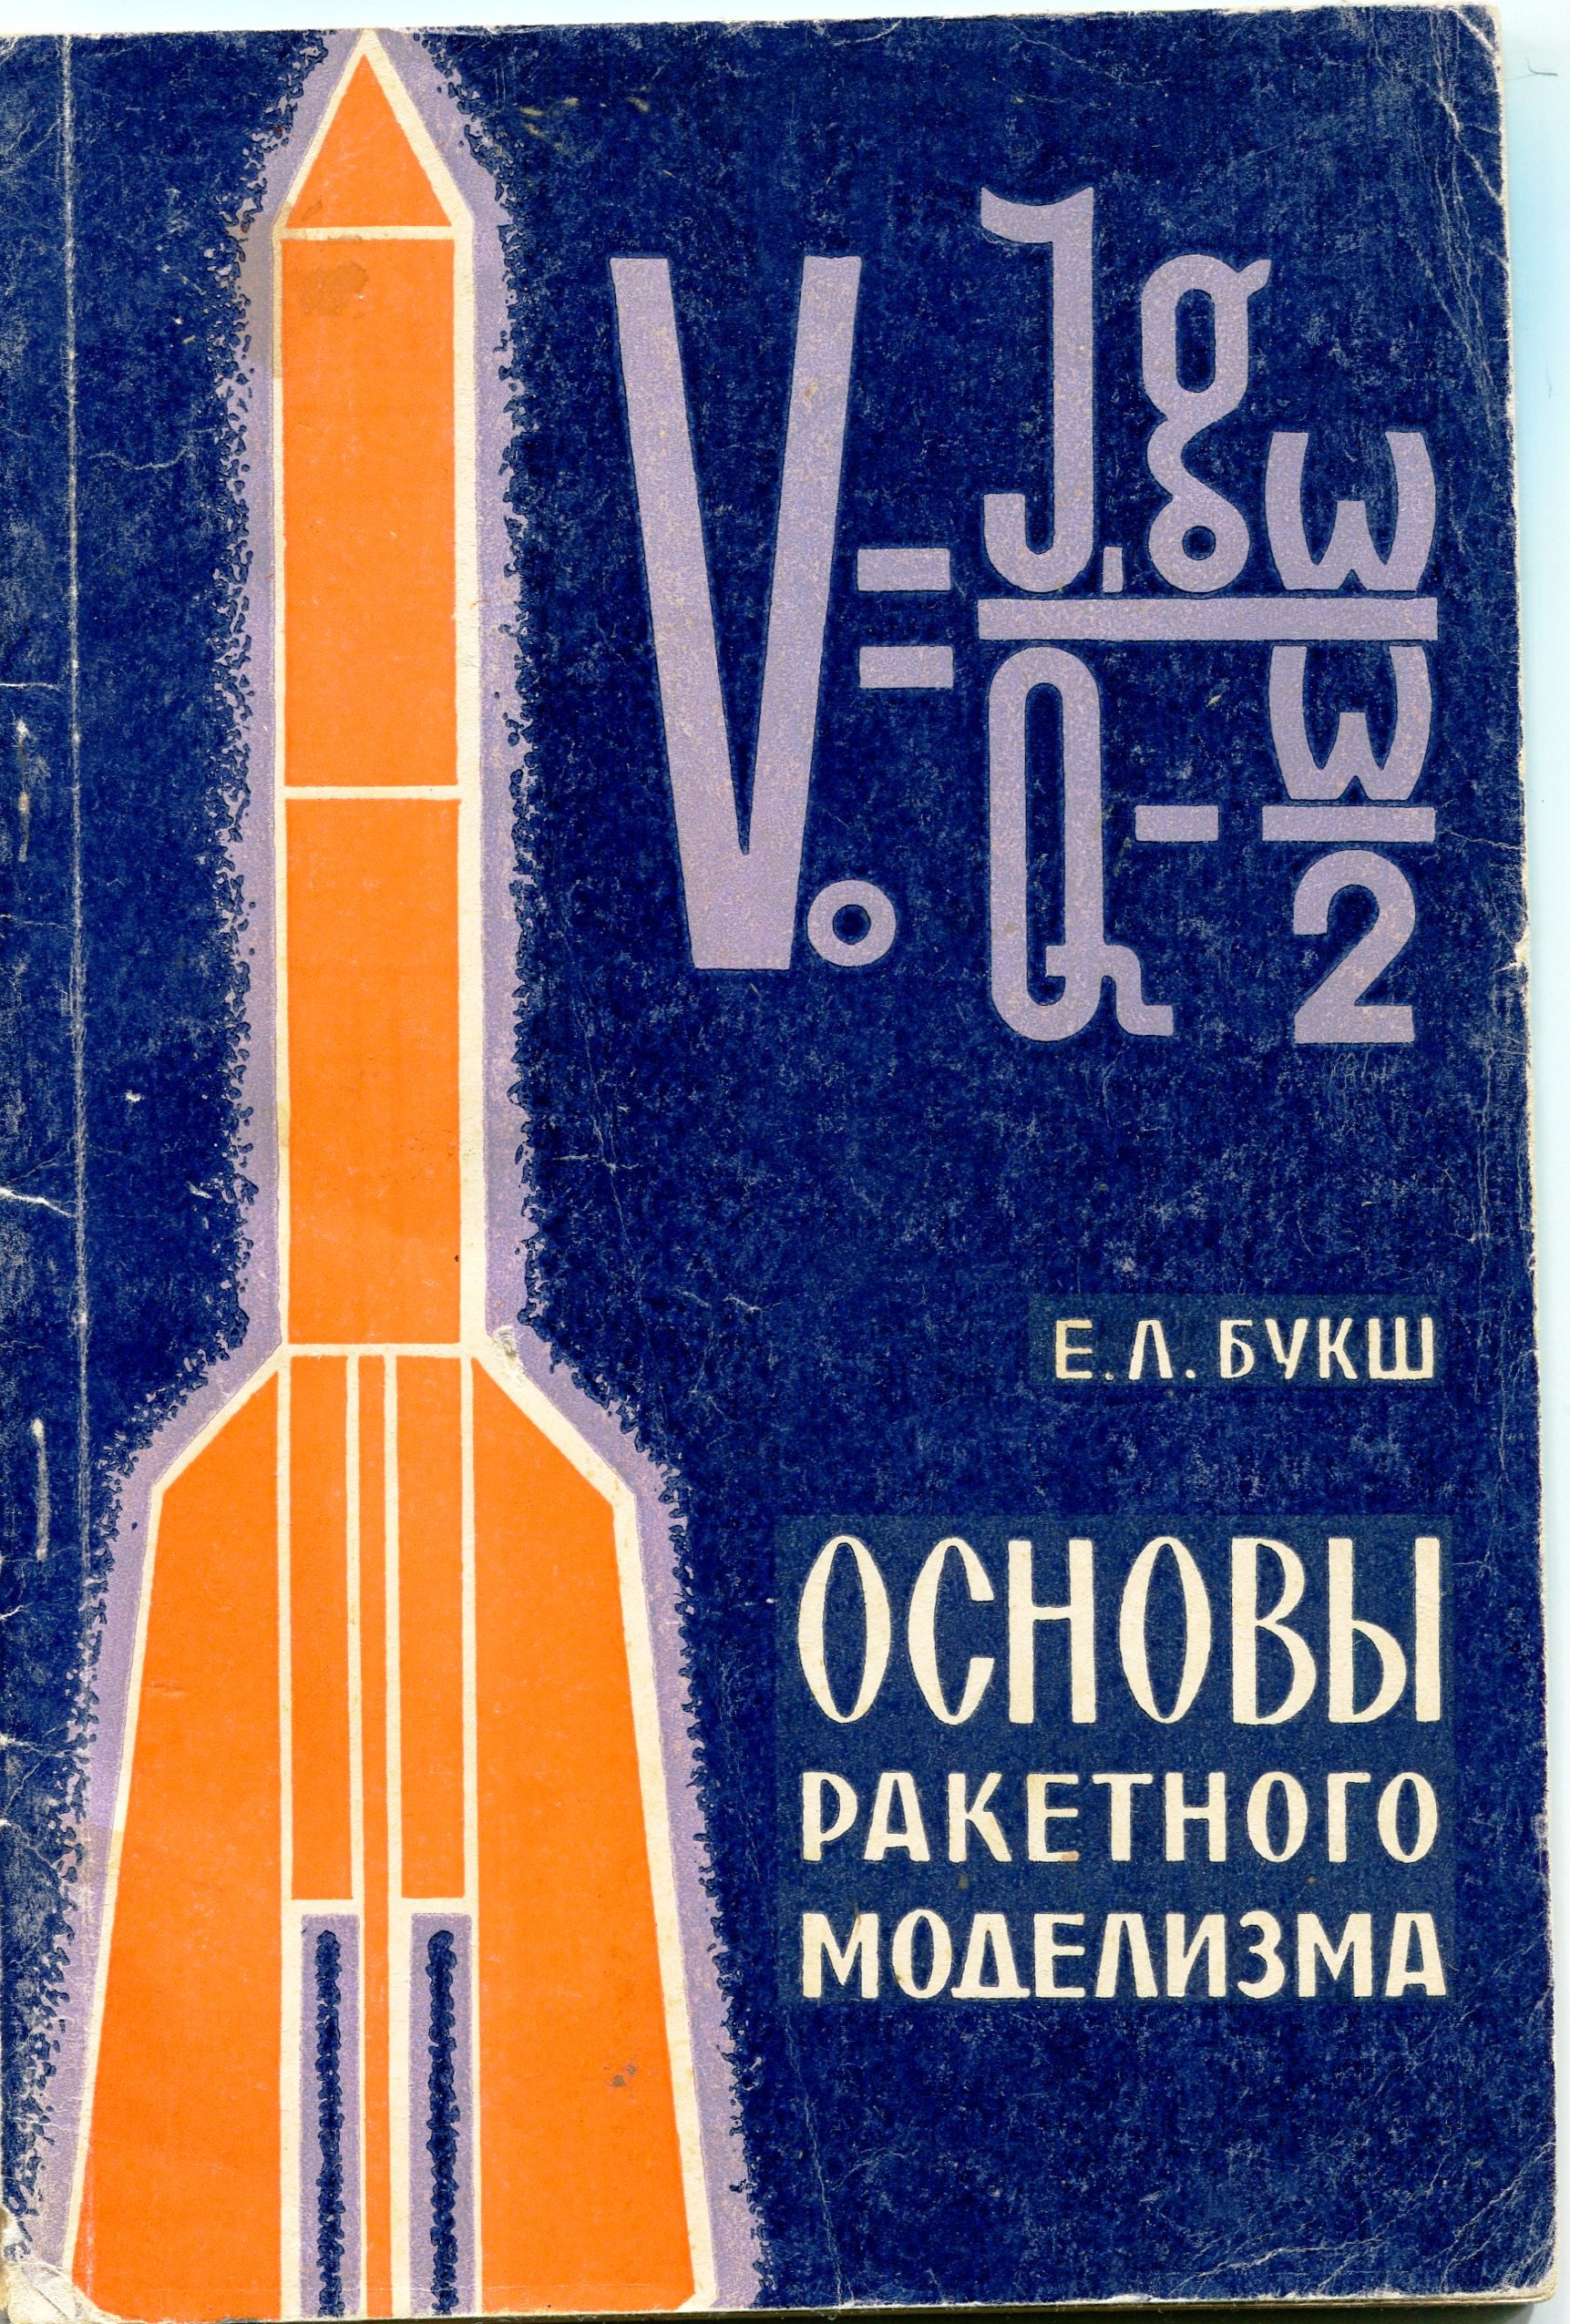 Книга Букш Е.Л. "Основы ракетного моделизма", 1972 (Державний політехнічний музей імені Бориса Патона CC BY-NC-SA)